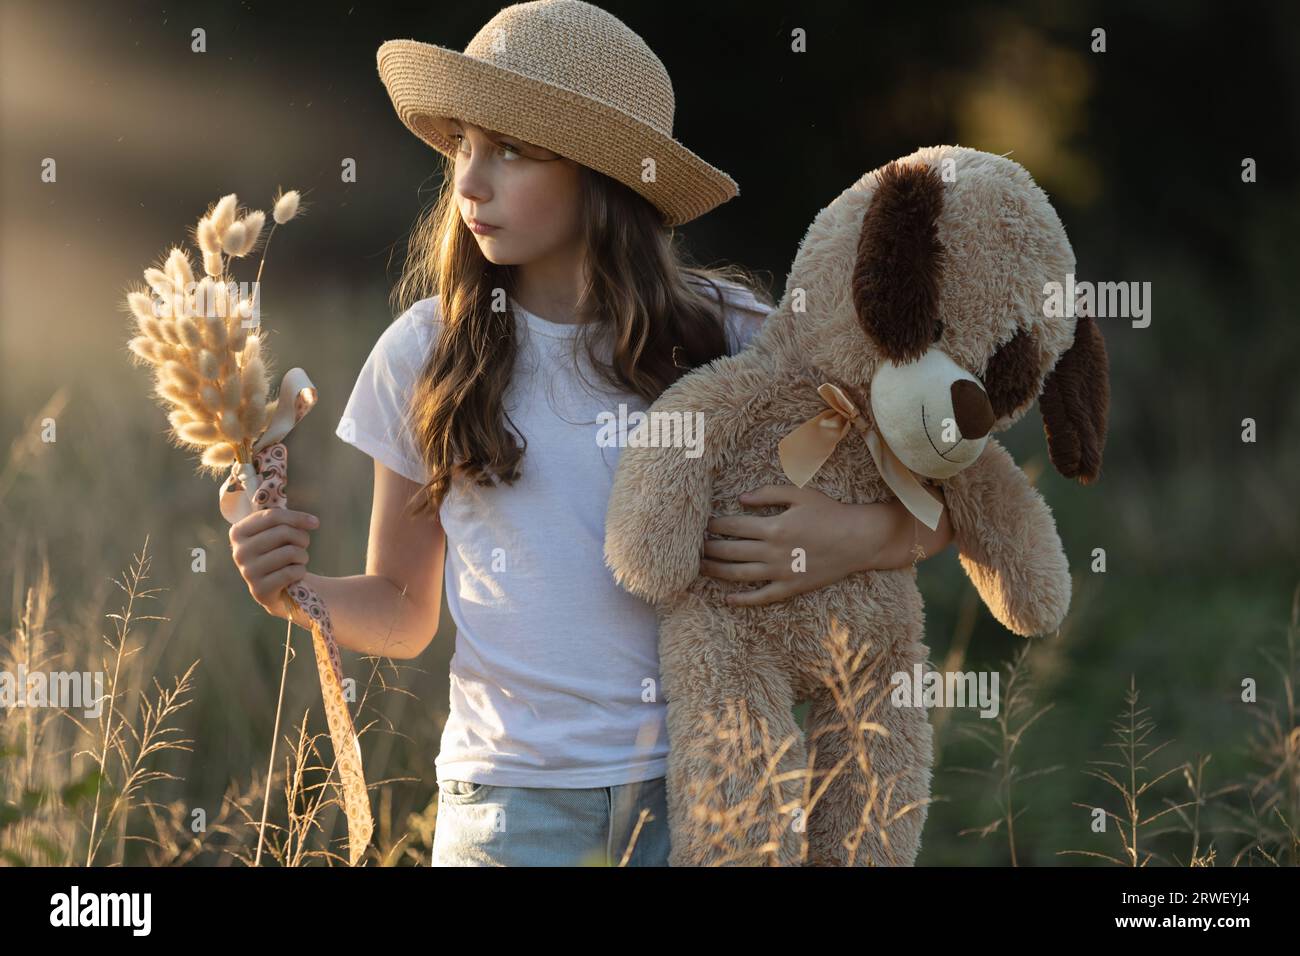 Giovane ragazza caucasica che indossa un cappello e tiene in mano una posia di erba secca e il suo orsacchiotto mentre guarda lateralmente al tramonto Foto Stock